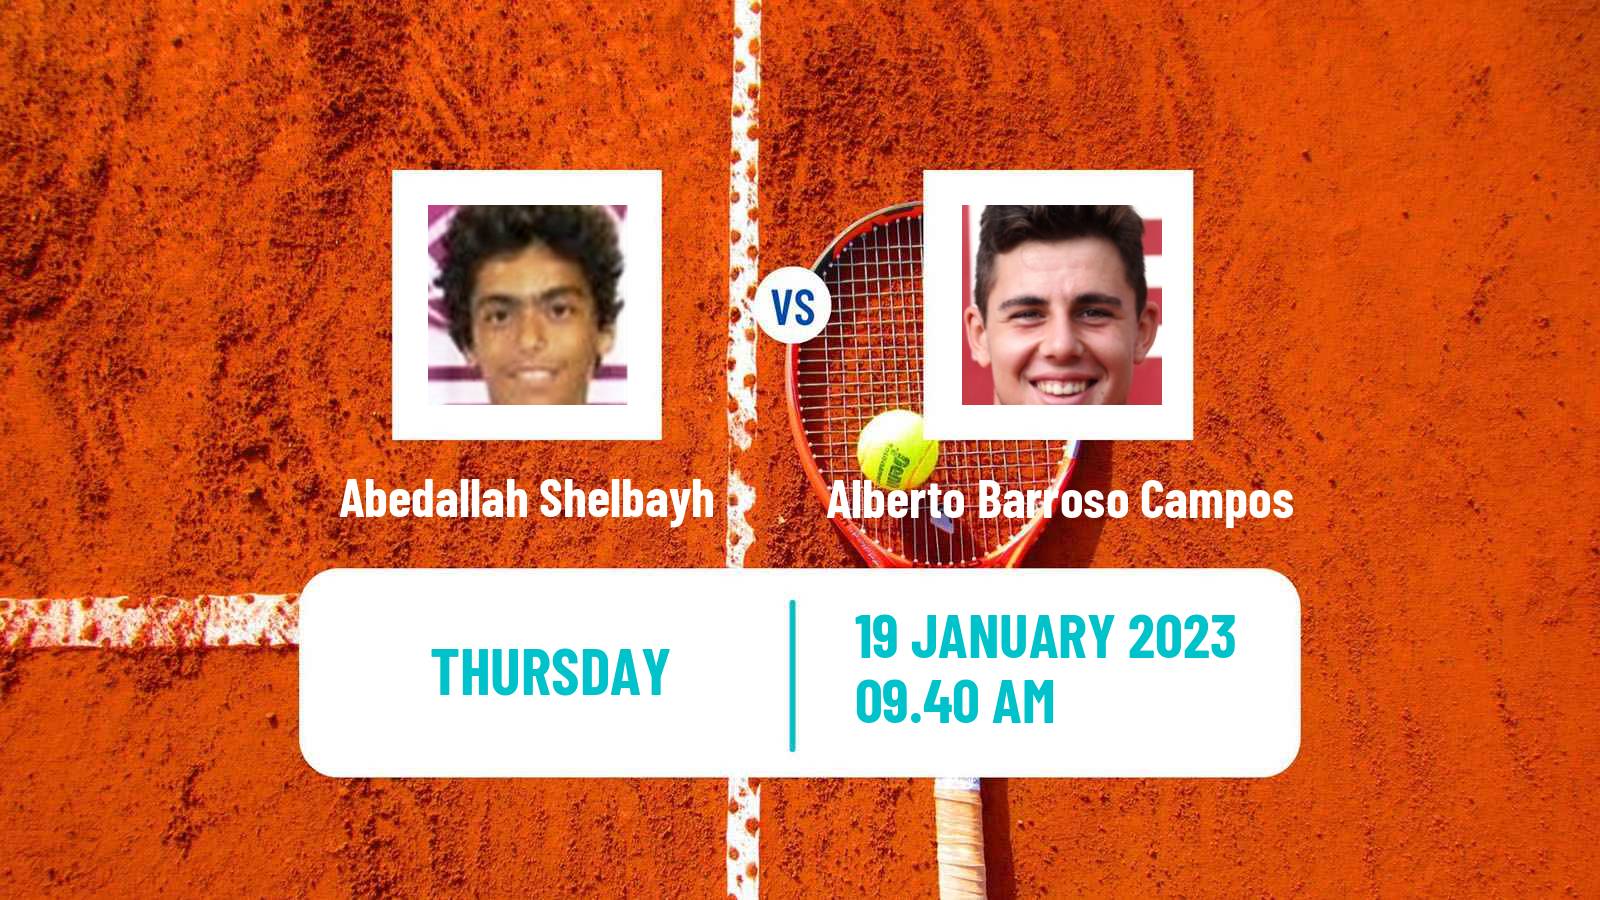 Tennis ITF Tournaments Abedallah Shelbayh - Alberto Barroso Campos